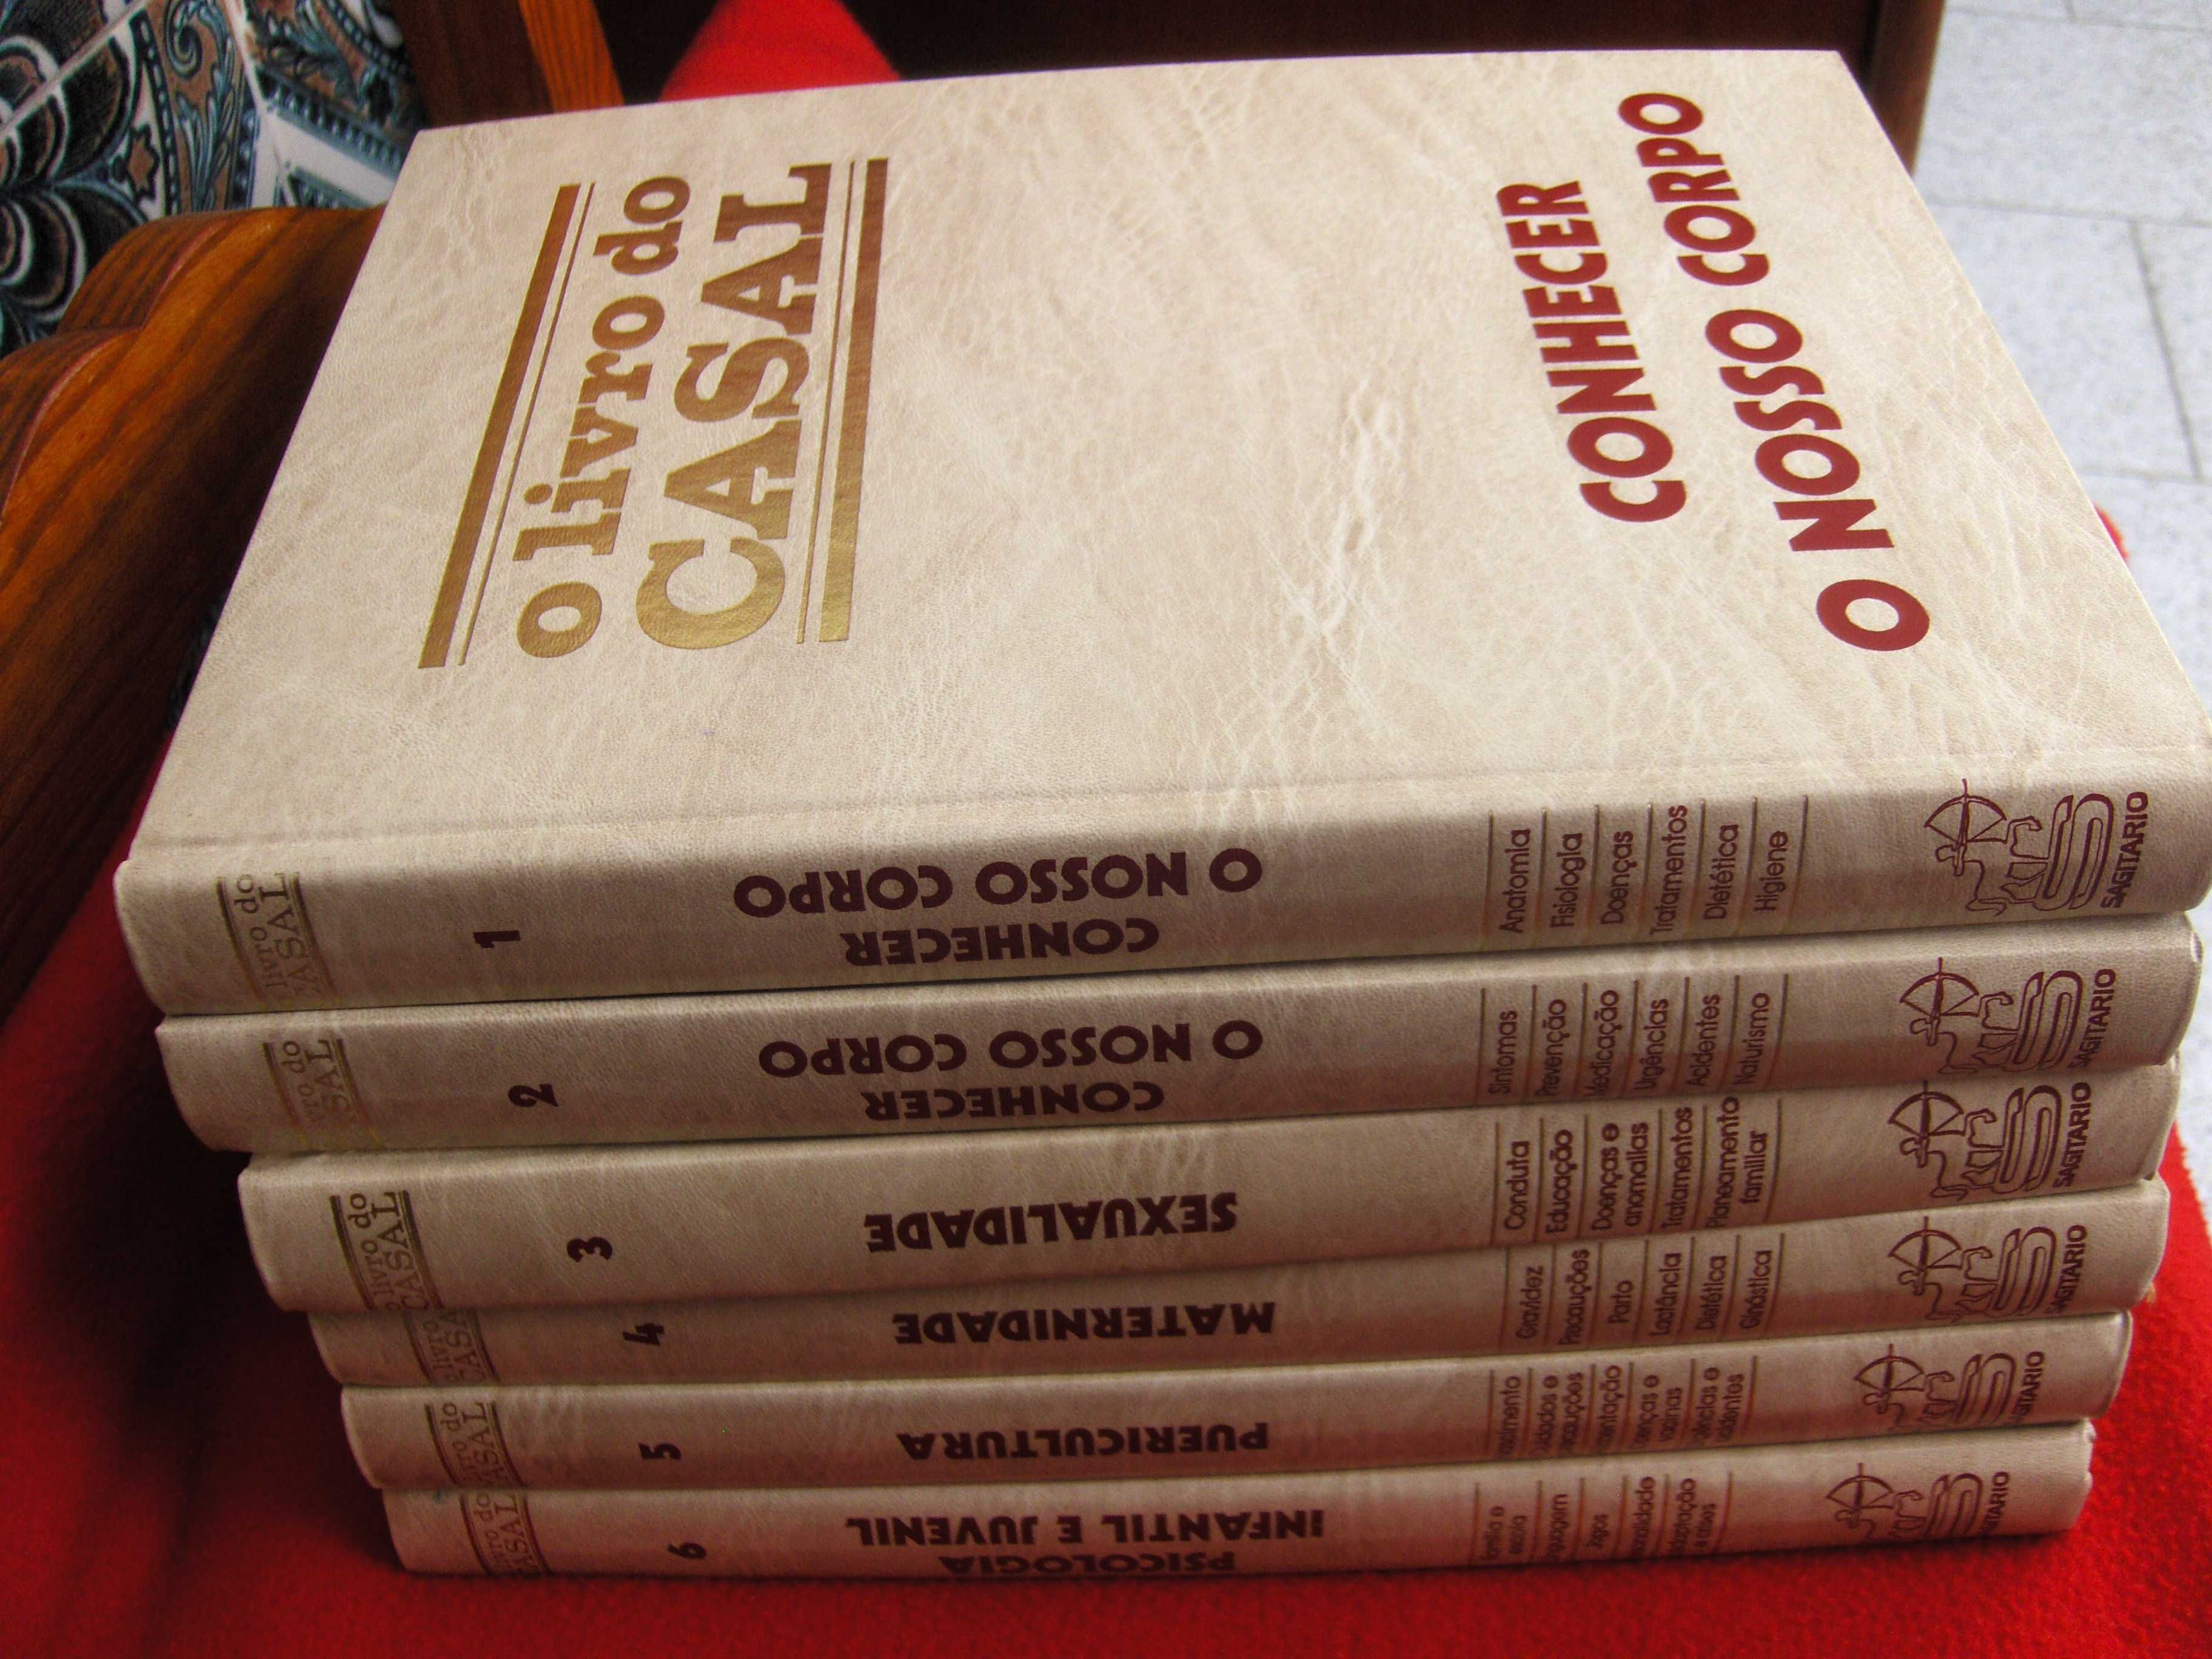 Livros de Coleção: "O LIVRO DO CASAL" - 6 volumes muito estimados